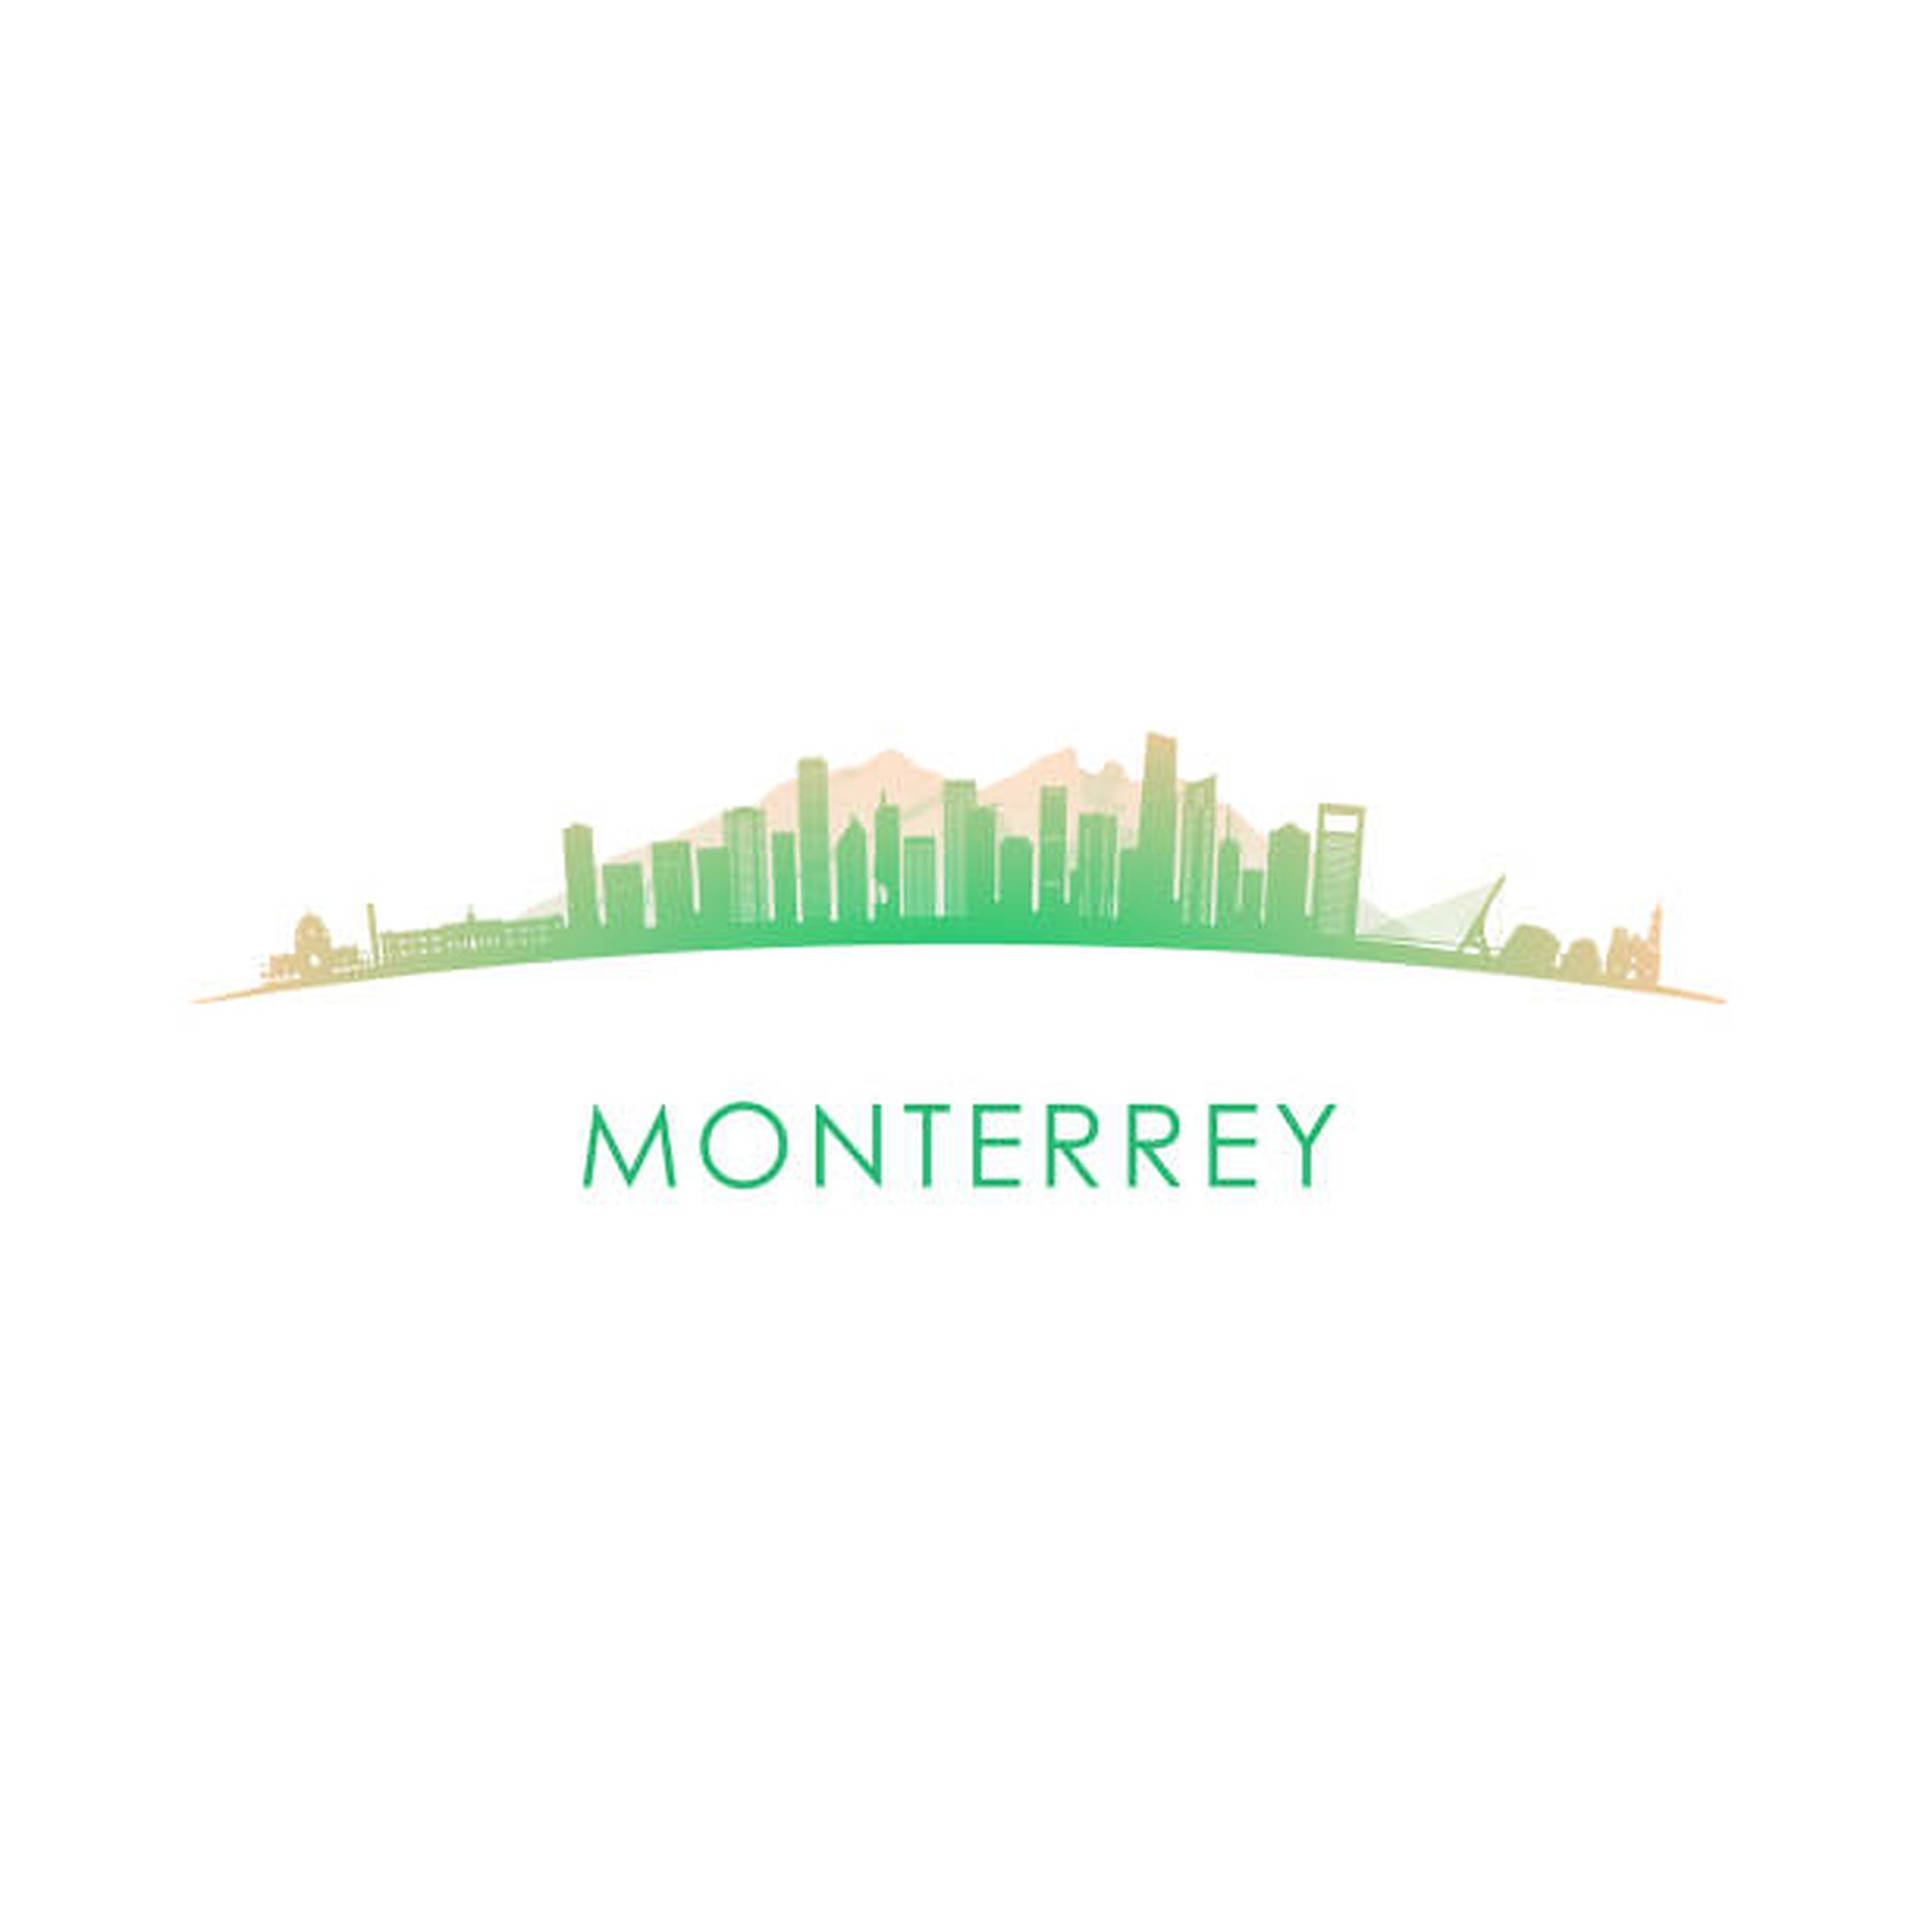 Monterrey Digital Artwork Background